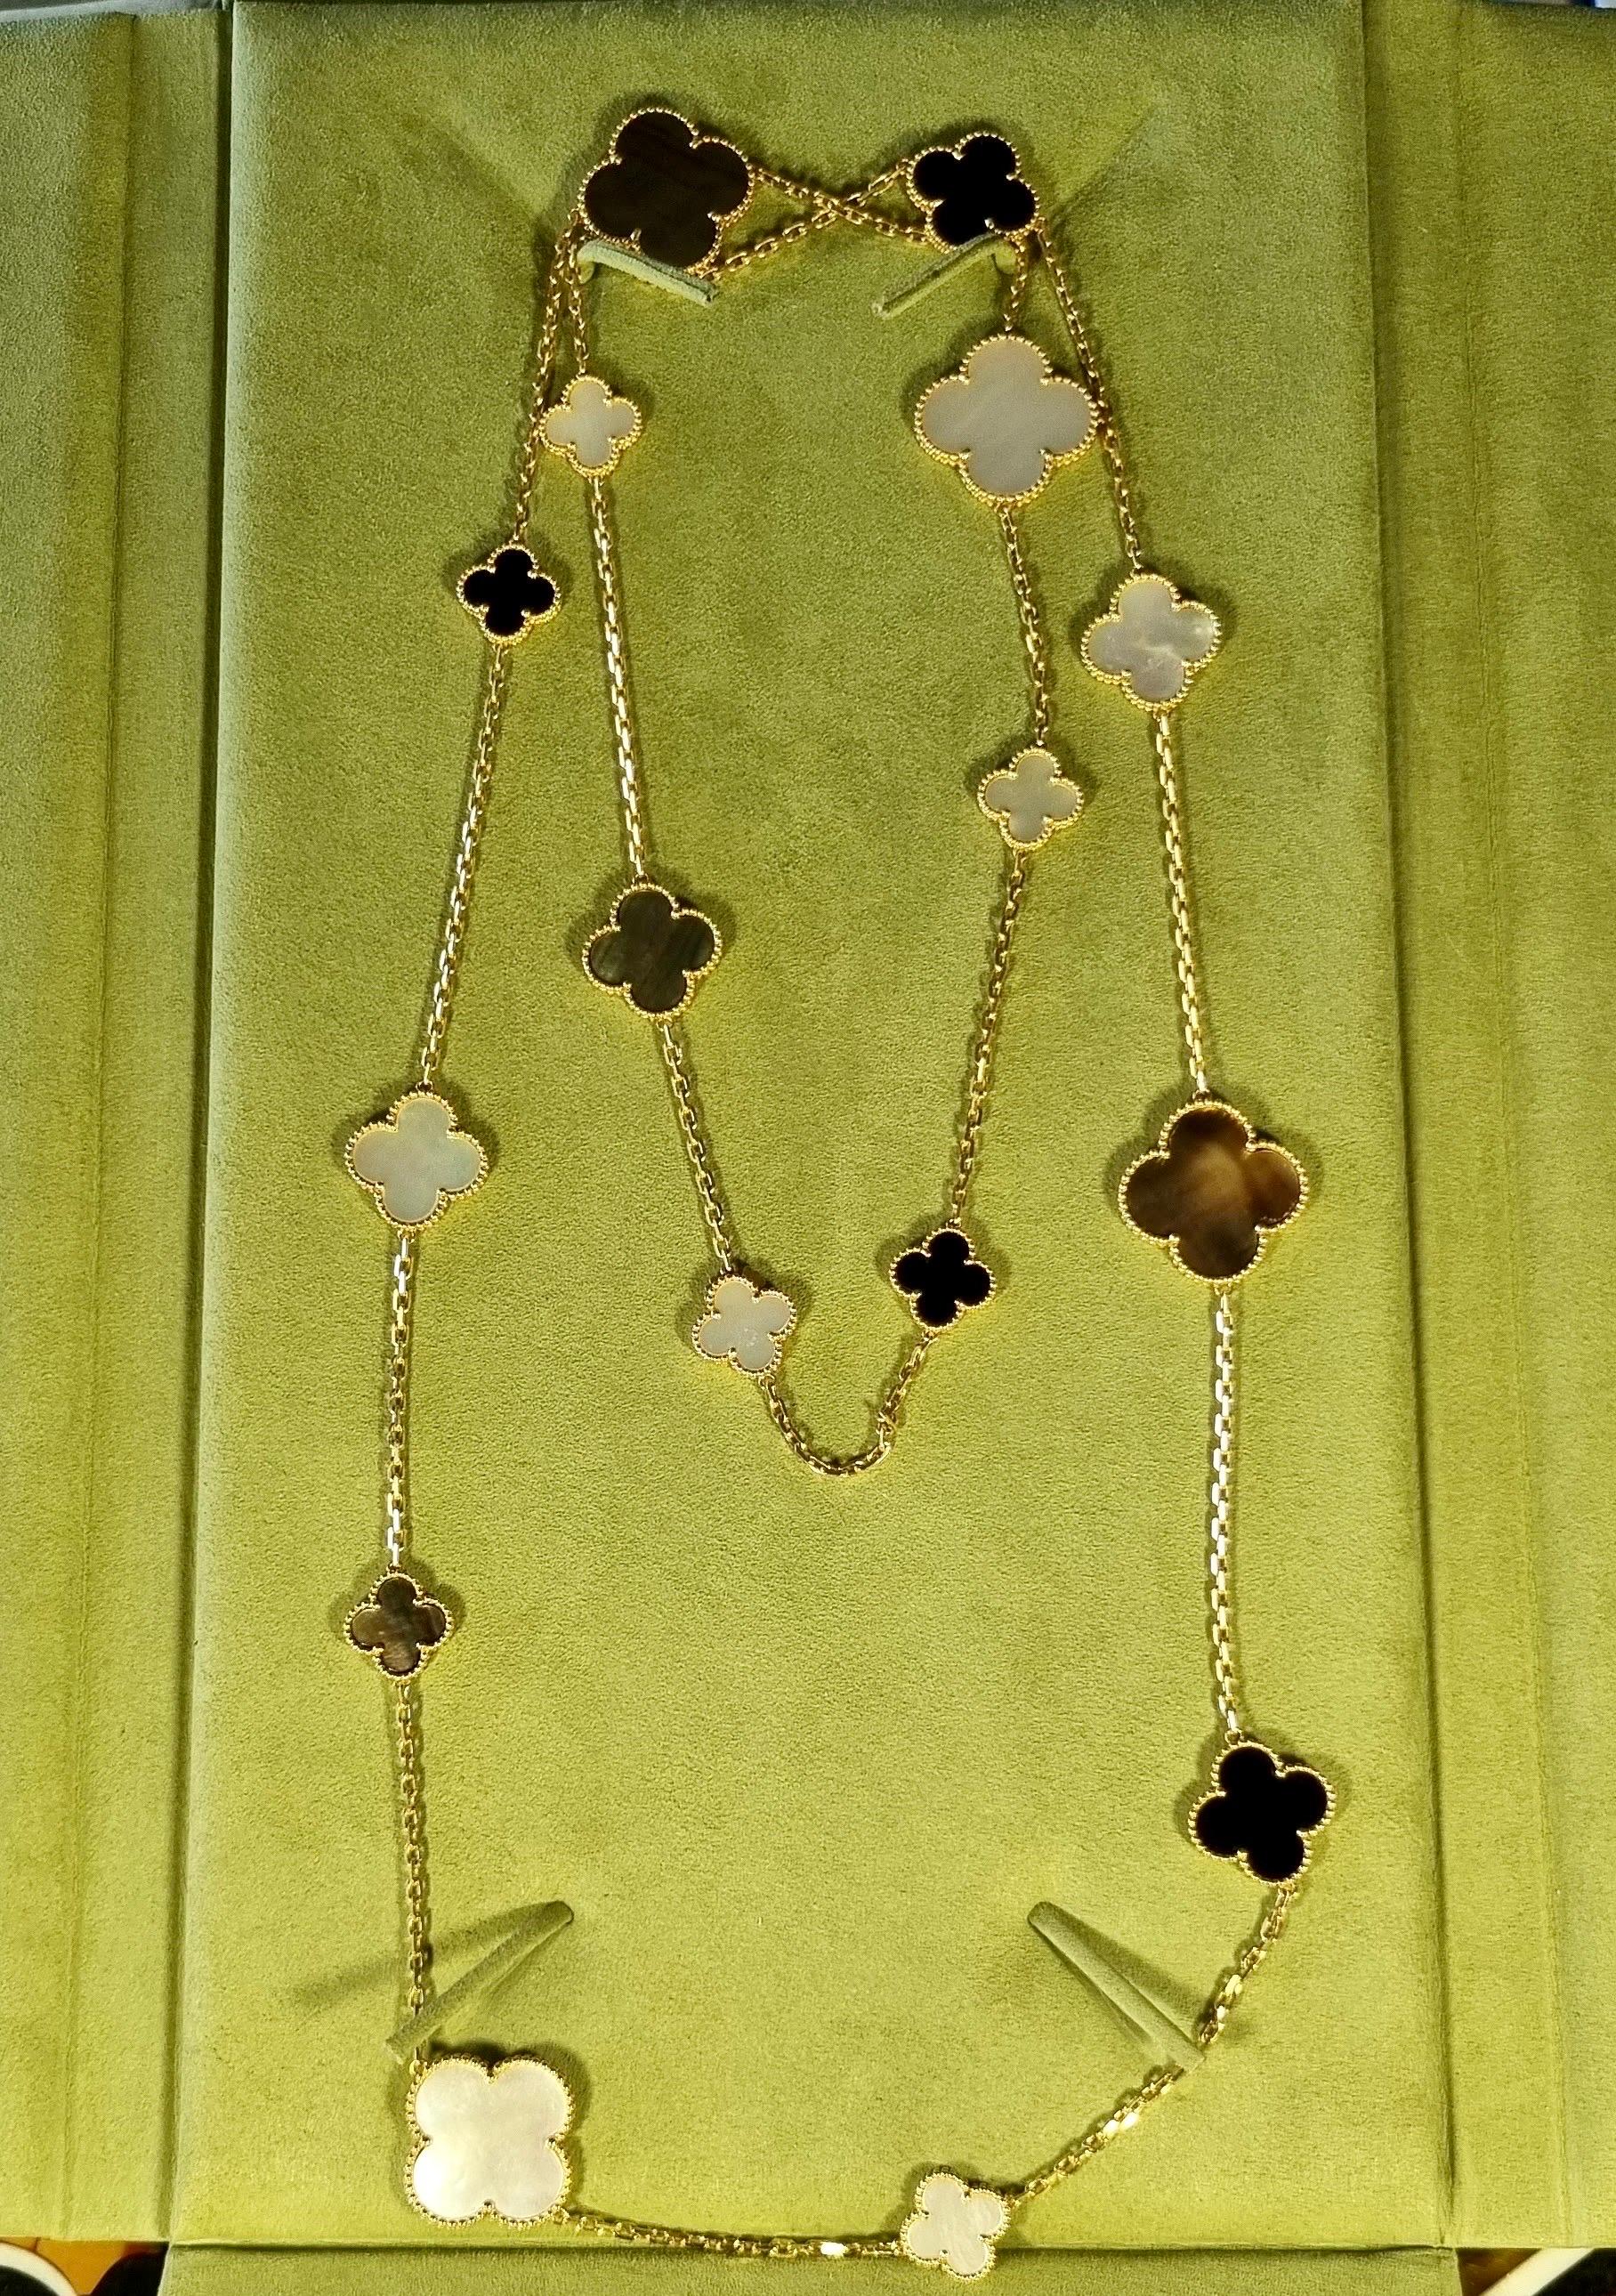 Ein wunderschönes Collier aus 18 Karat Gelbgold von Van Cleef & Arpels aus der Magic Alhambra Collection. Die Halskette besteht aus 16 ikonischen vierblättrigen Kleeblattmotiven, die sich in der Größe abwechseln und mit weißen Perlmutt-, grauen